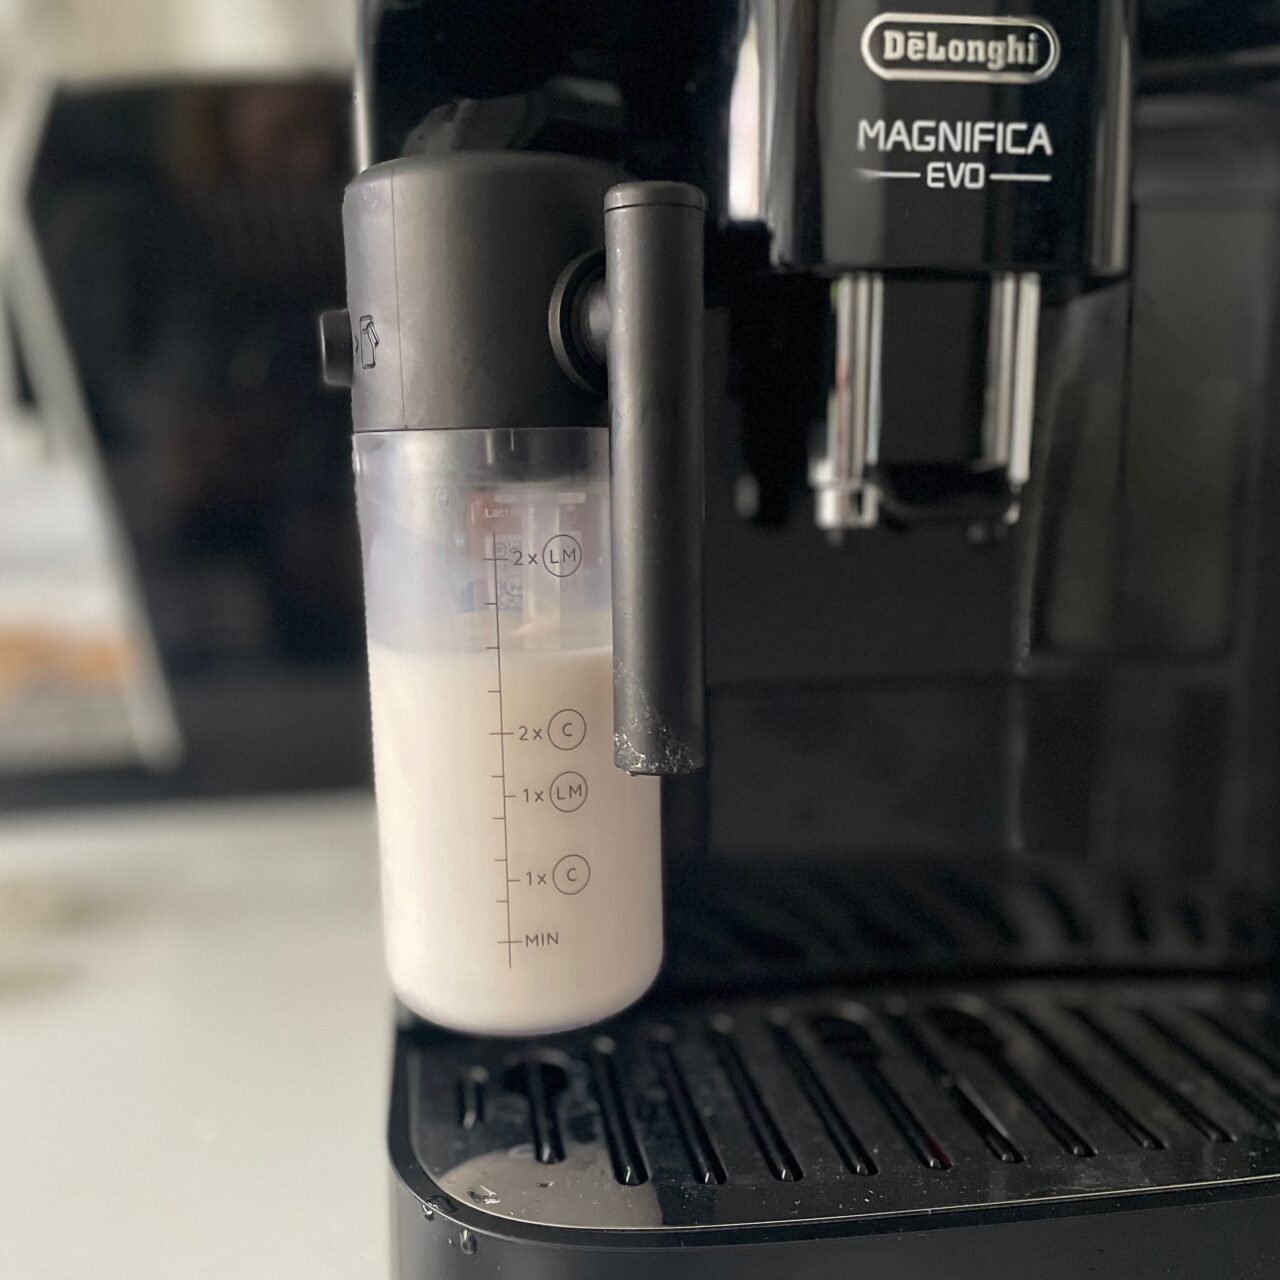 Ekspres do kawy marki DeLonghi, model Magnifica EVO, z widocznym pojemnikiem na mleko.